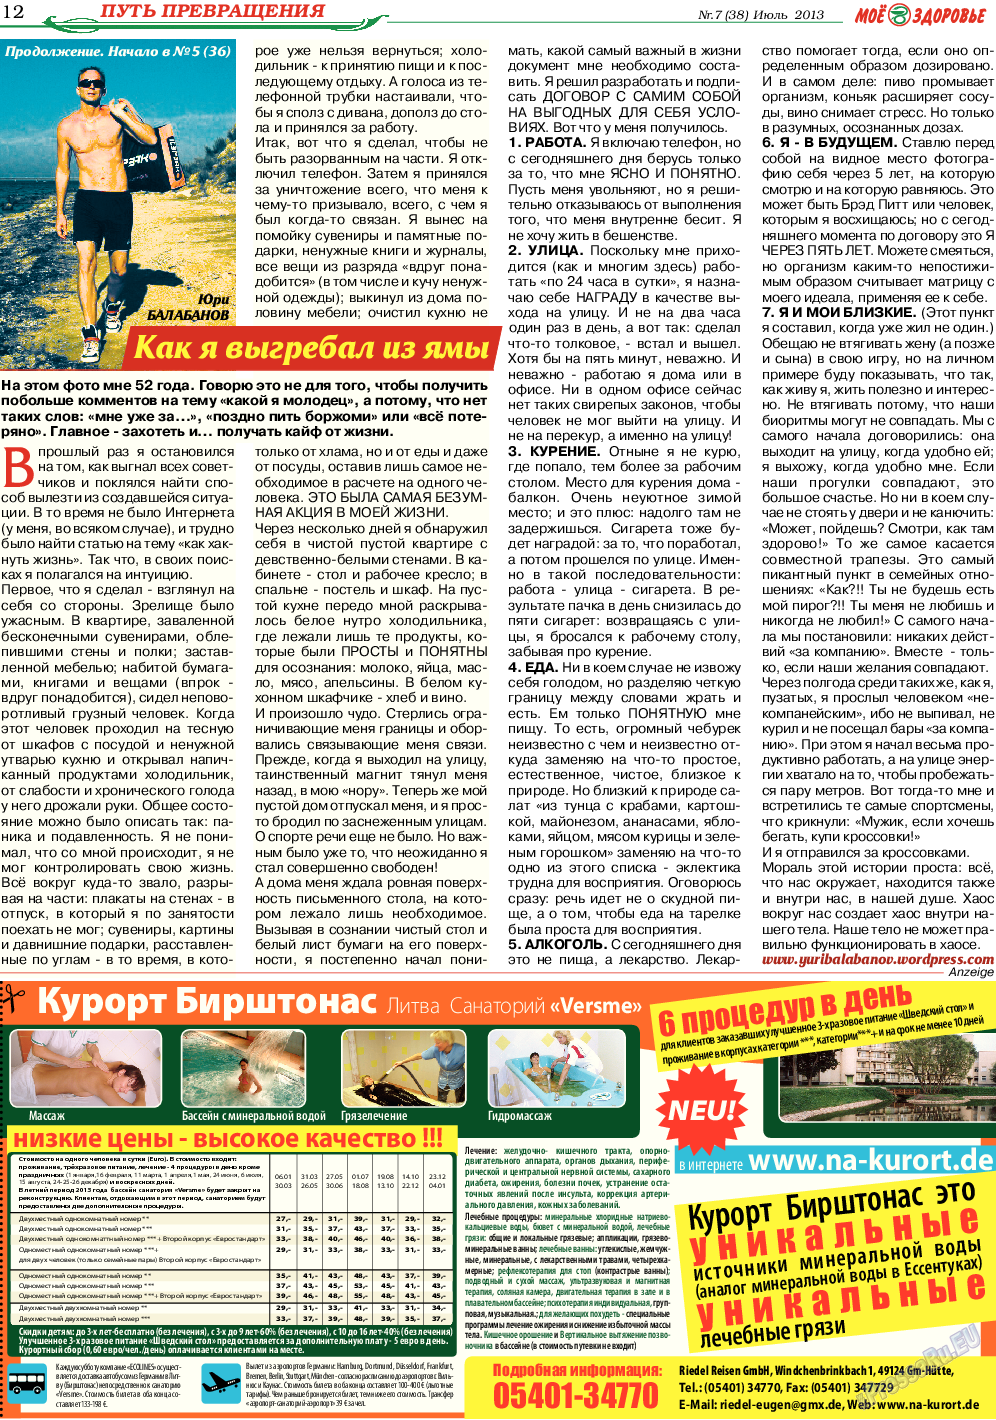 Кругозор, газета. 2013 №7 стр.12